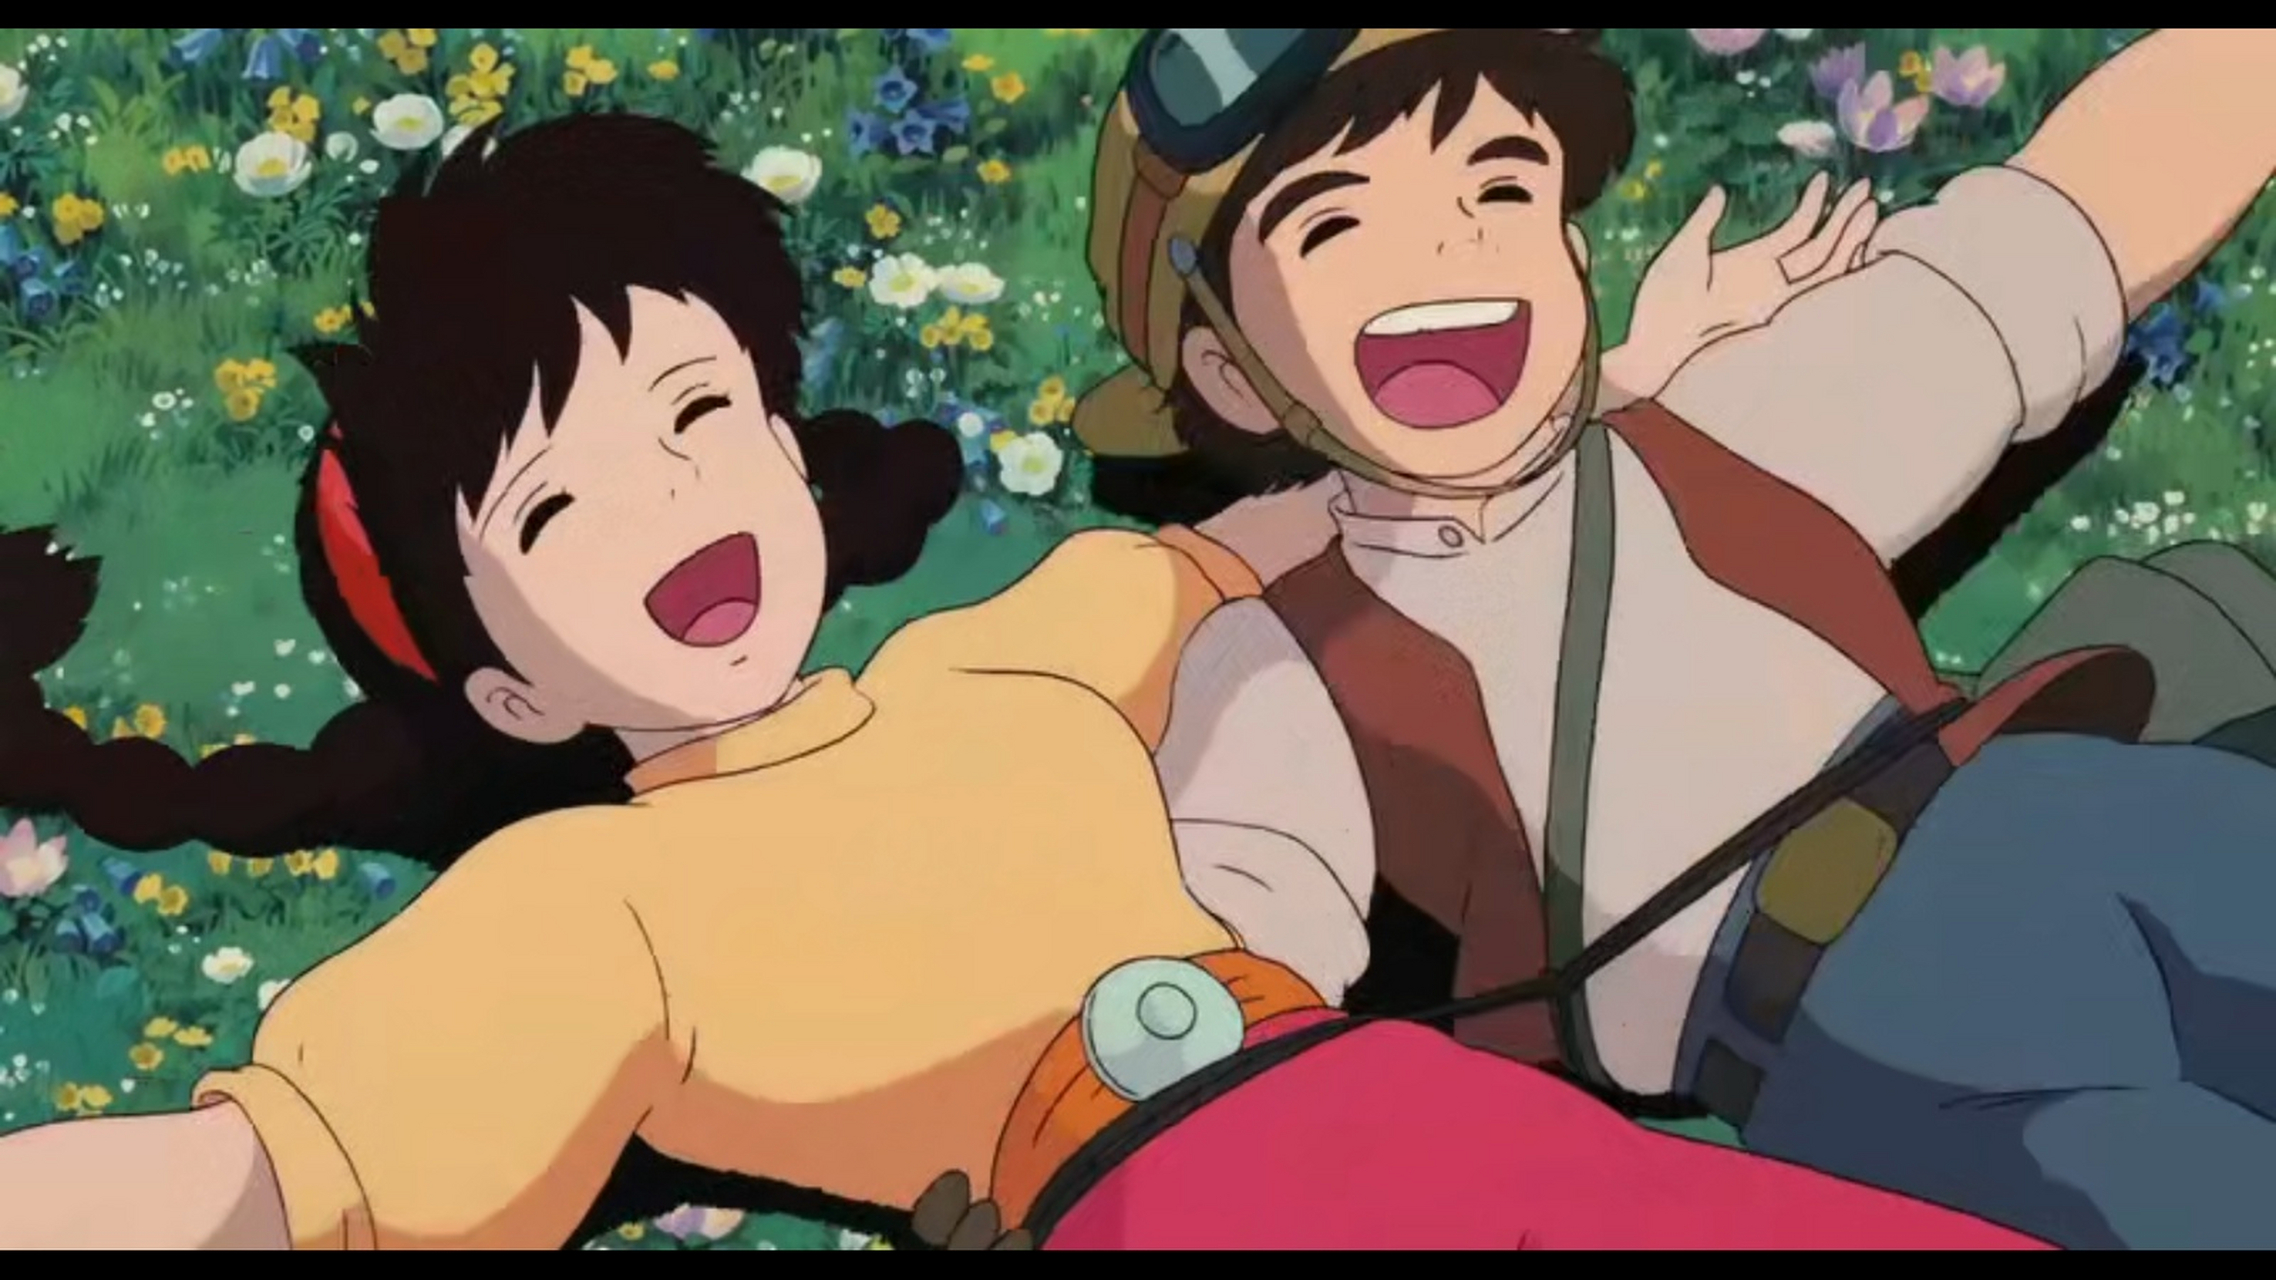 看到《天空之城》的一幕剧照,发现宫崎骏笔下的人物笑起来都好治愈